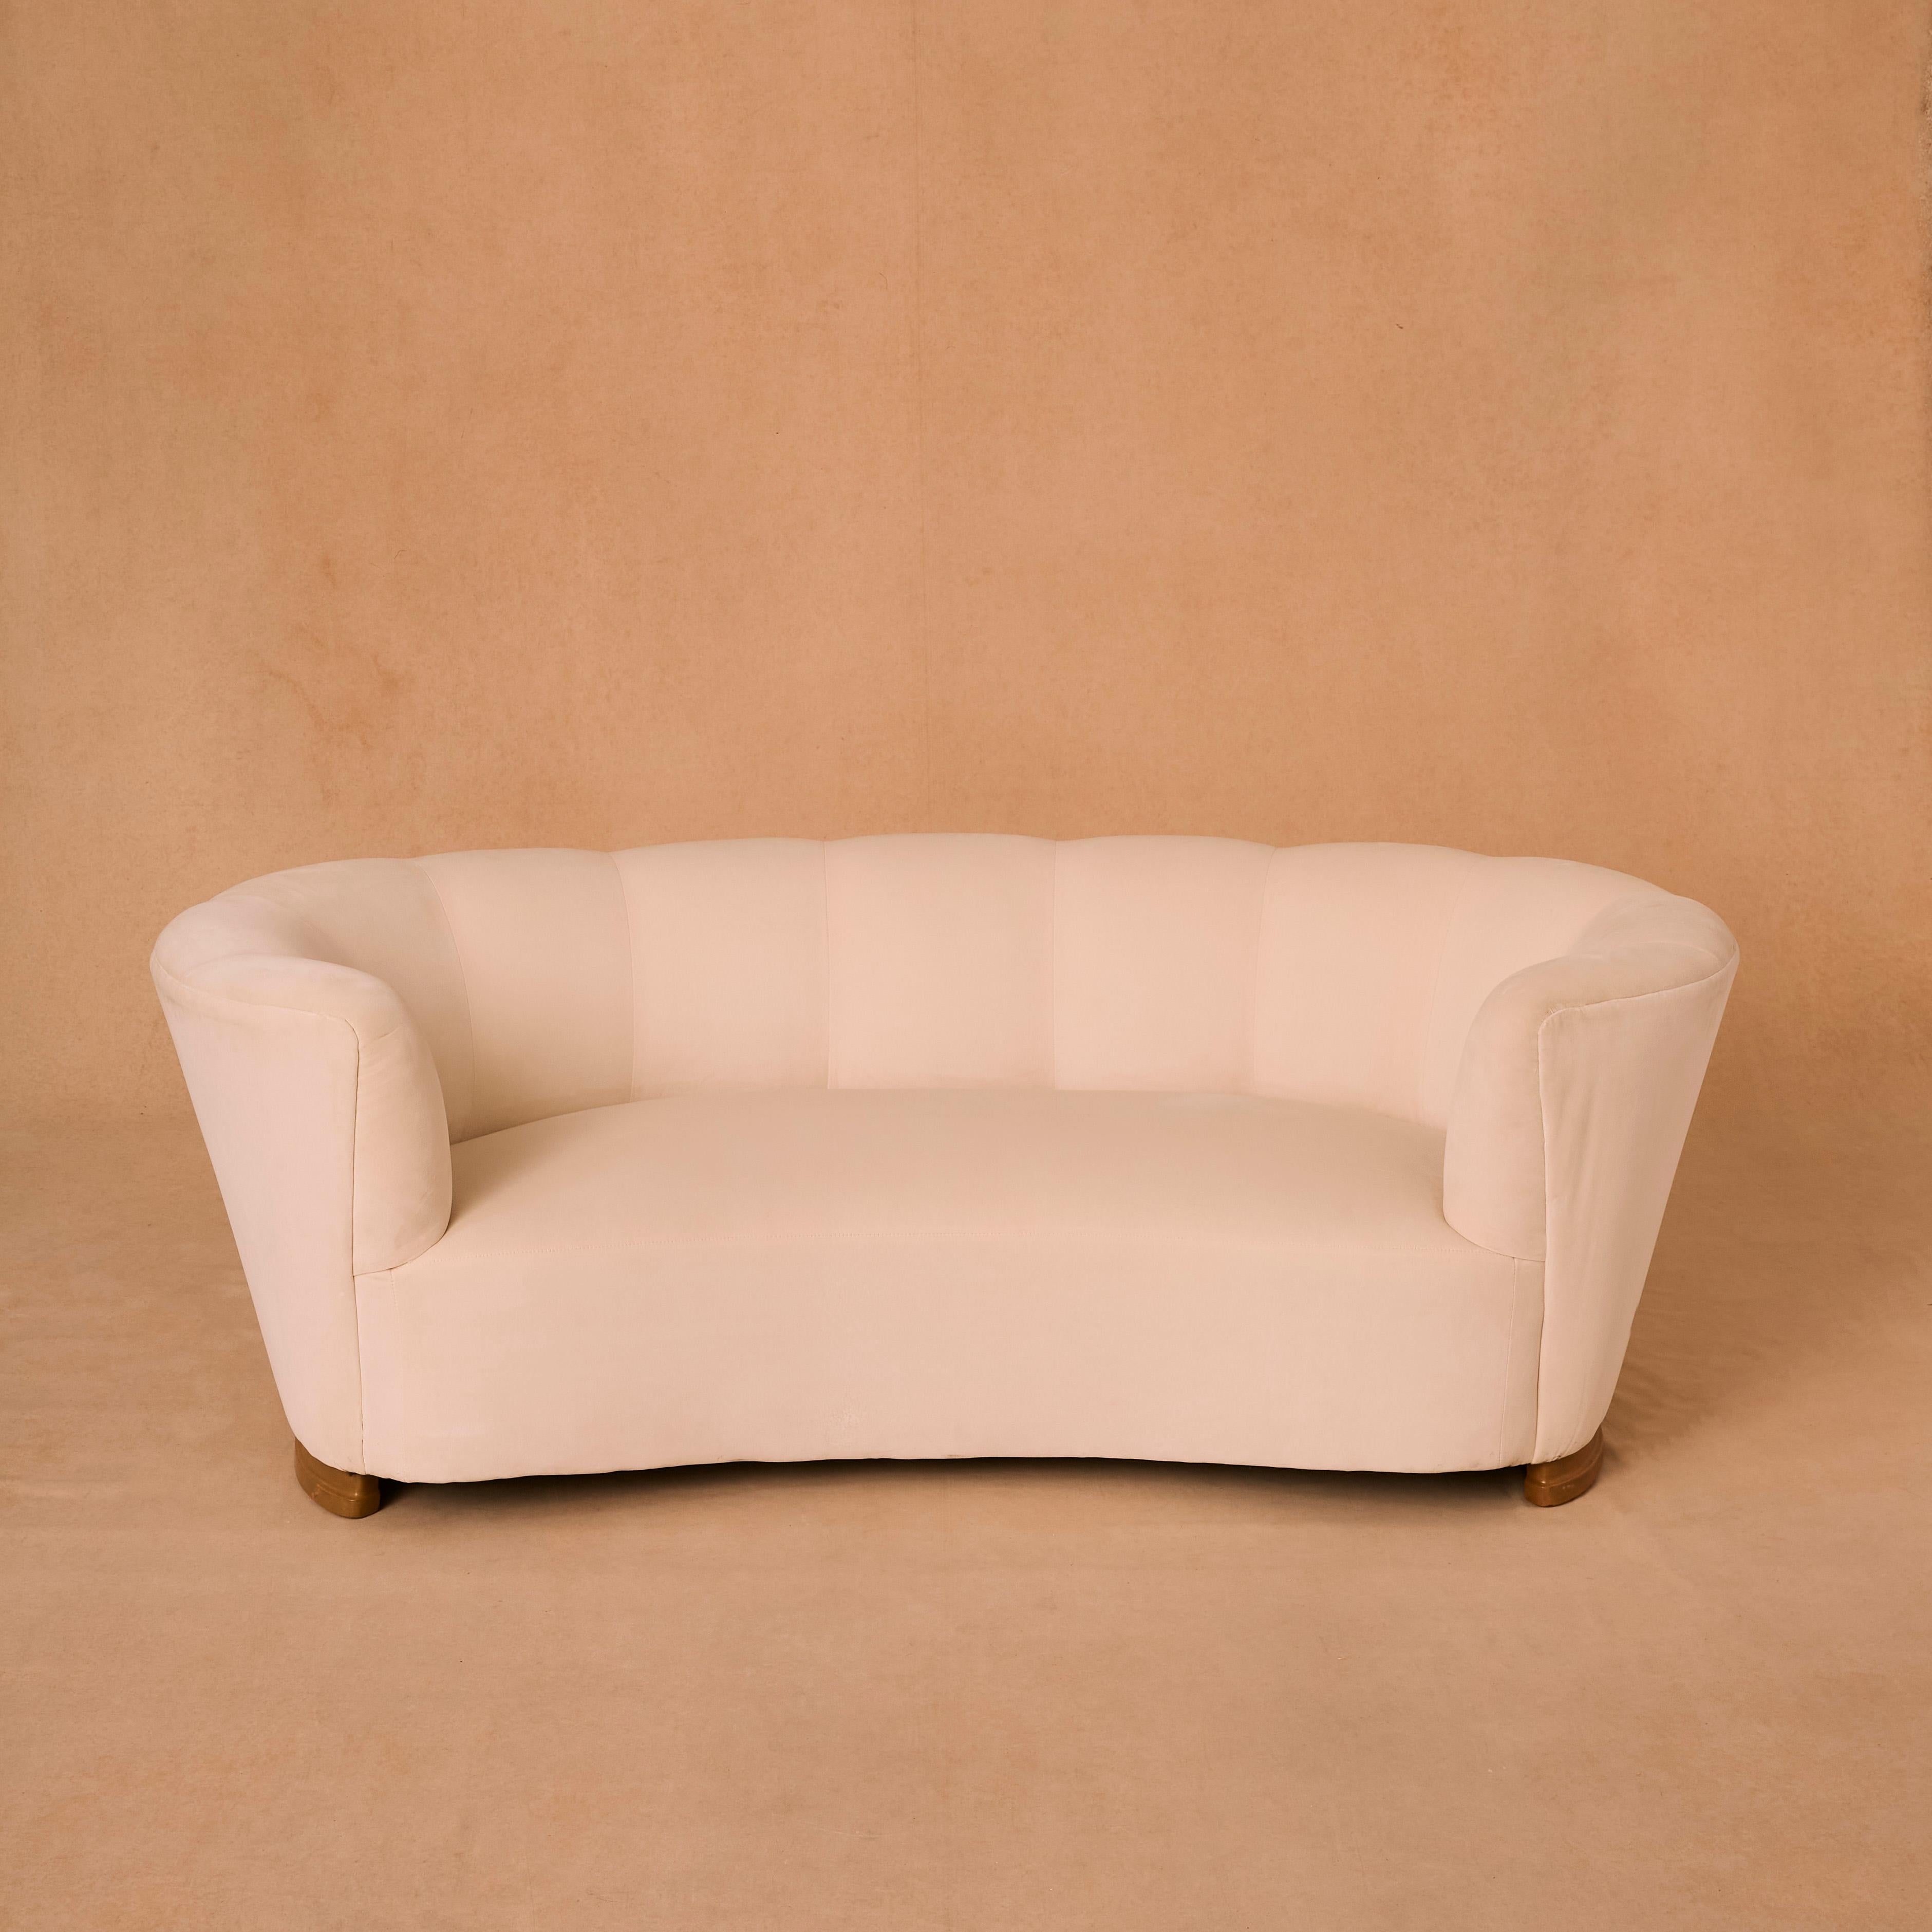 Three seater banana sofa upholstered in cream cotton velvet Danish design.